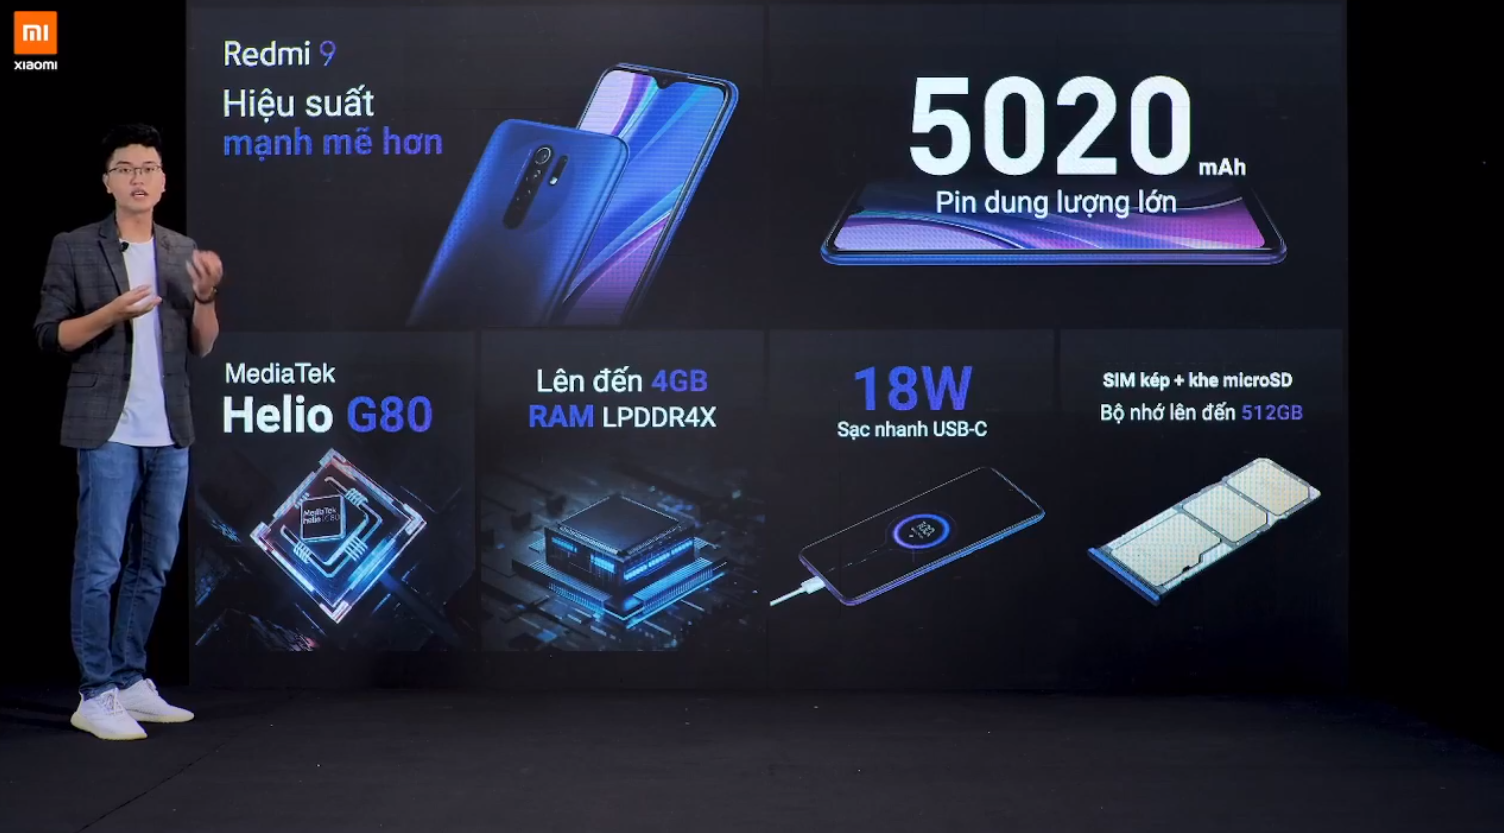 Sforum - Trang thông tin công nghệ mới nhất Xiaomi-redmi-9-7 Redmi 9 ra mắt tại VN: Smartphone phong cách nhất, màn hình lớn nhất, nhiều công nghệ nhất và giá "trung thực" nhất phân khúc 